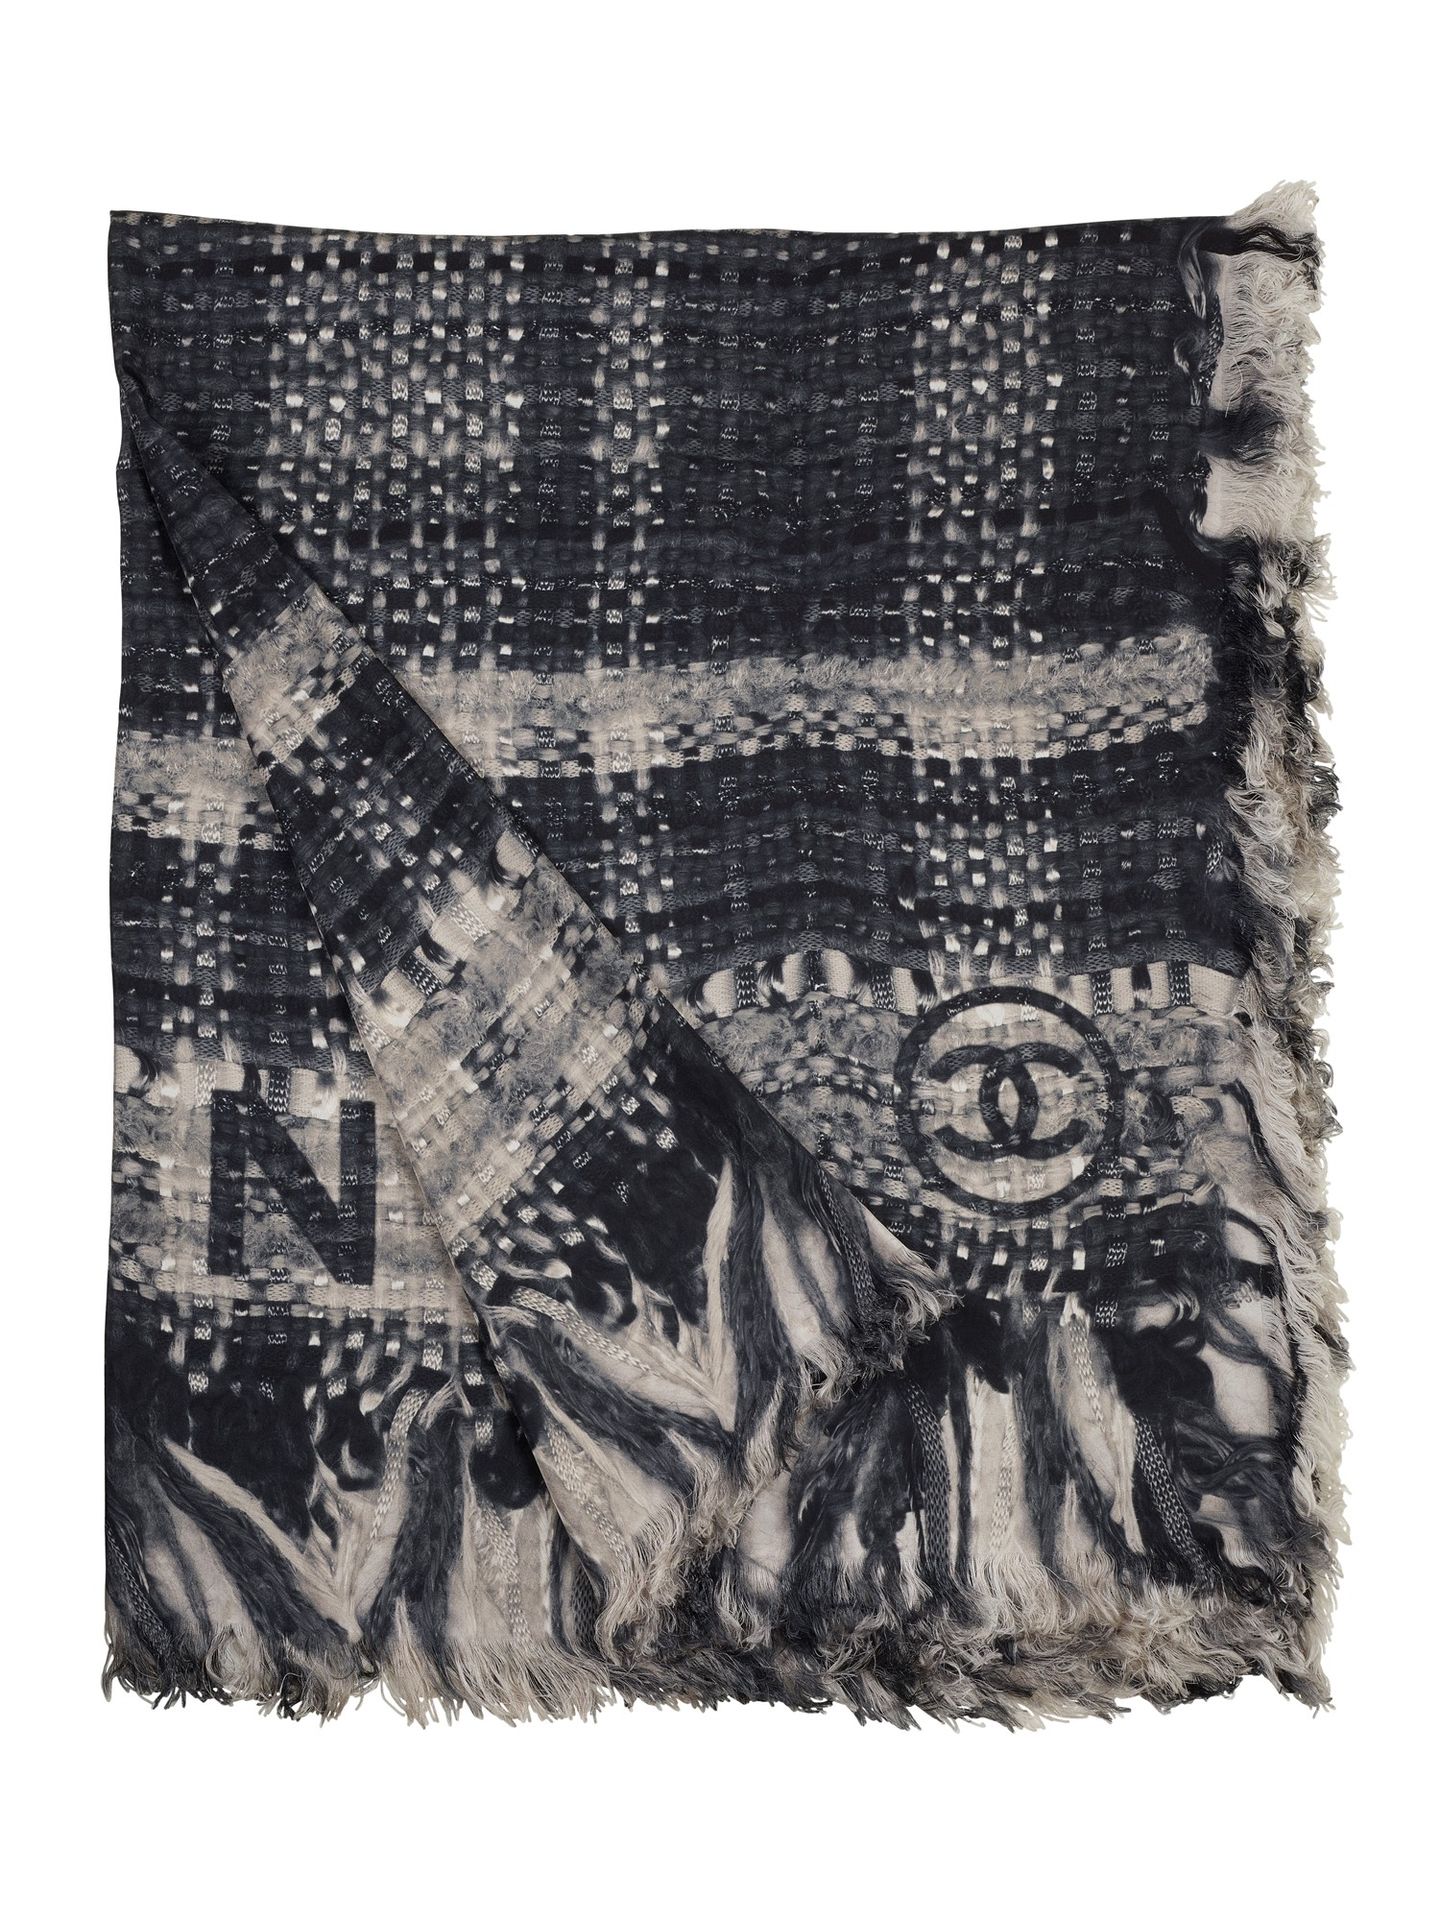 CHANEL 香奈儿带标志的丝巾。状况极佳。

尺寸为185 x 125厘米

 





 

香奈儿丝绸围巾，带有CC标志。条件非常好。